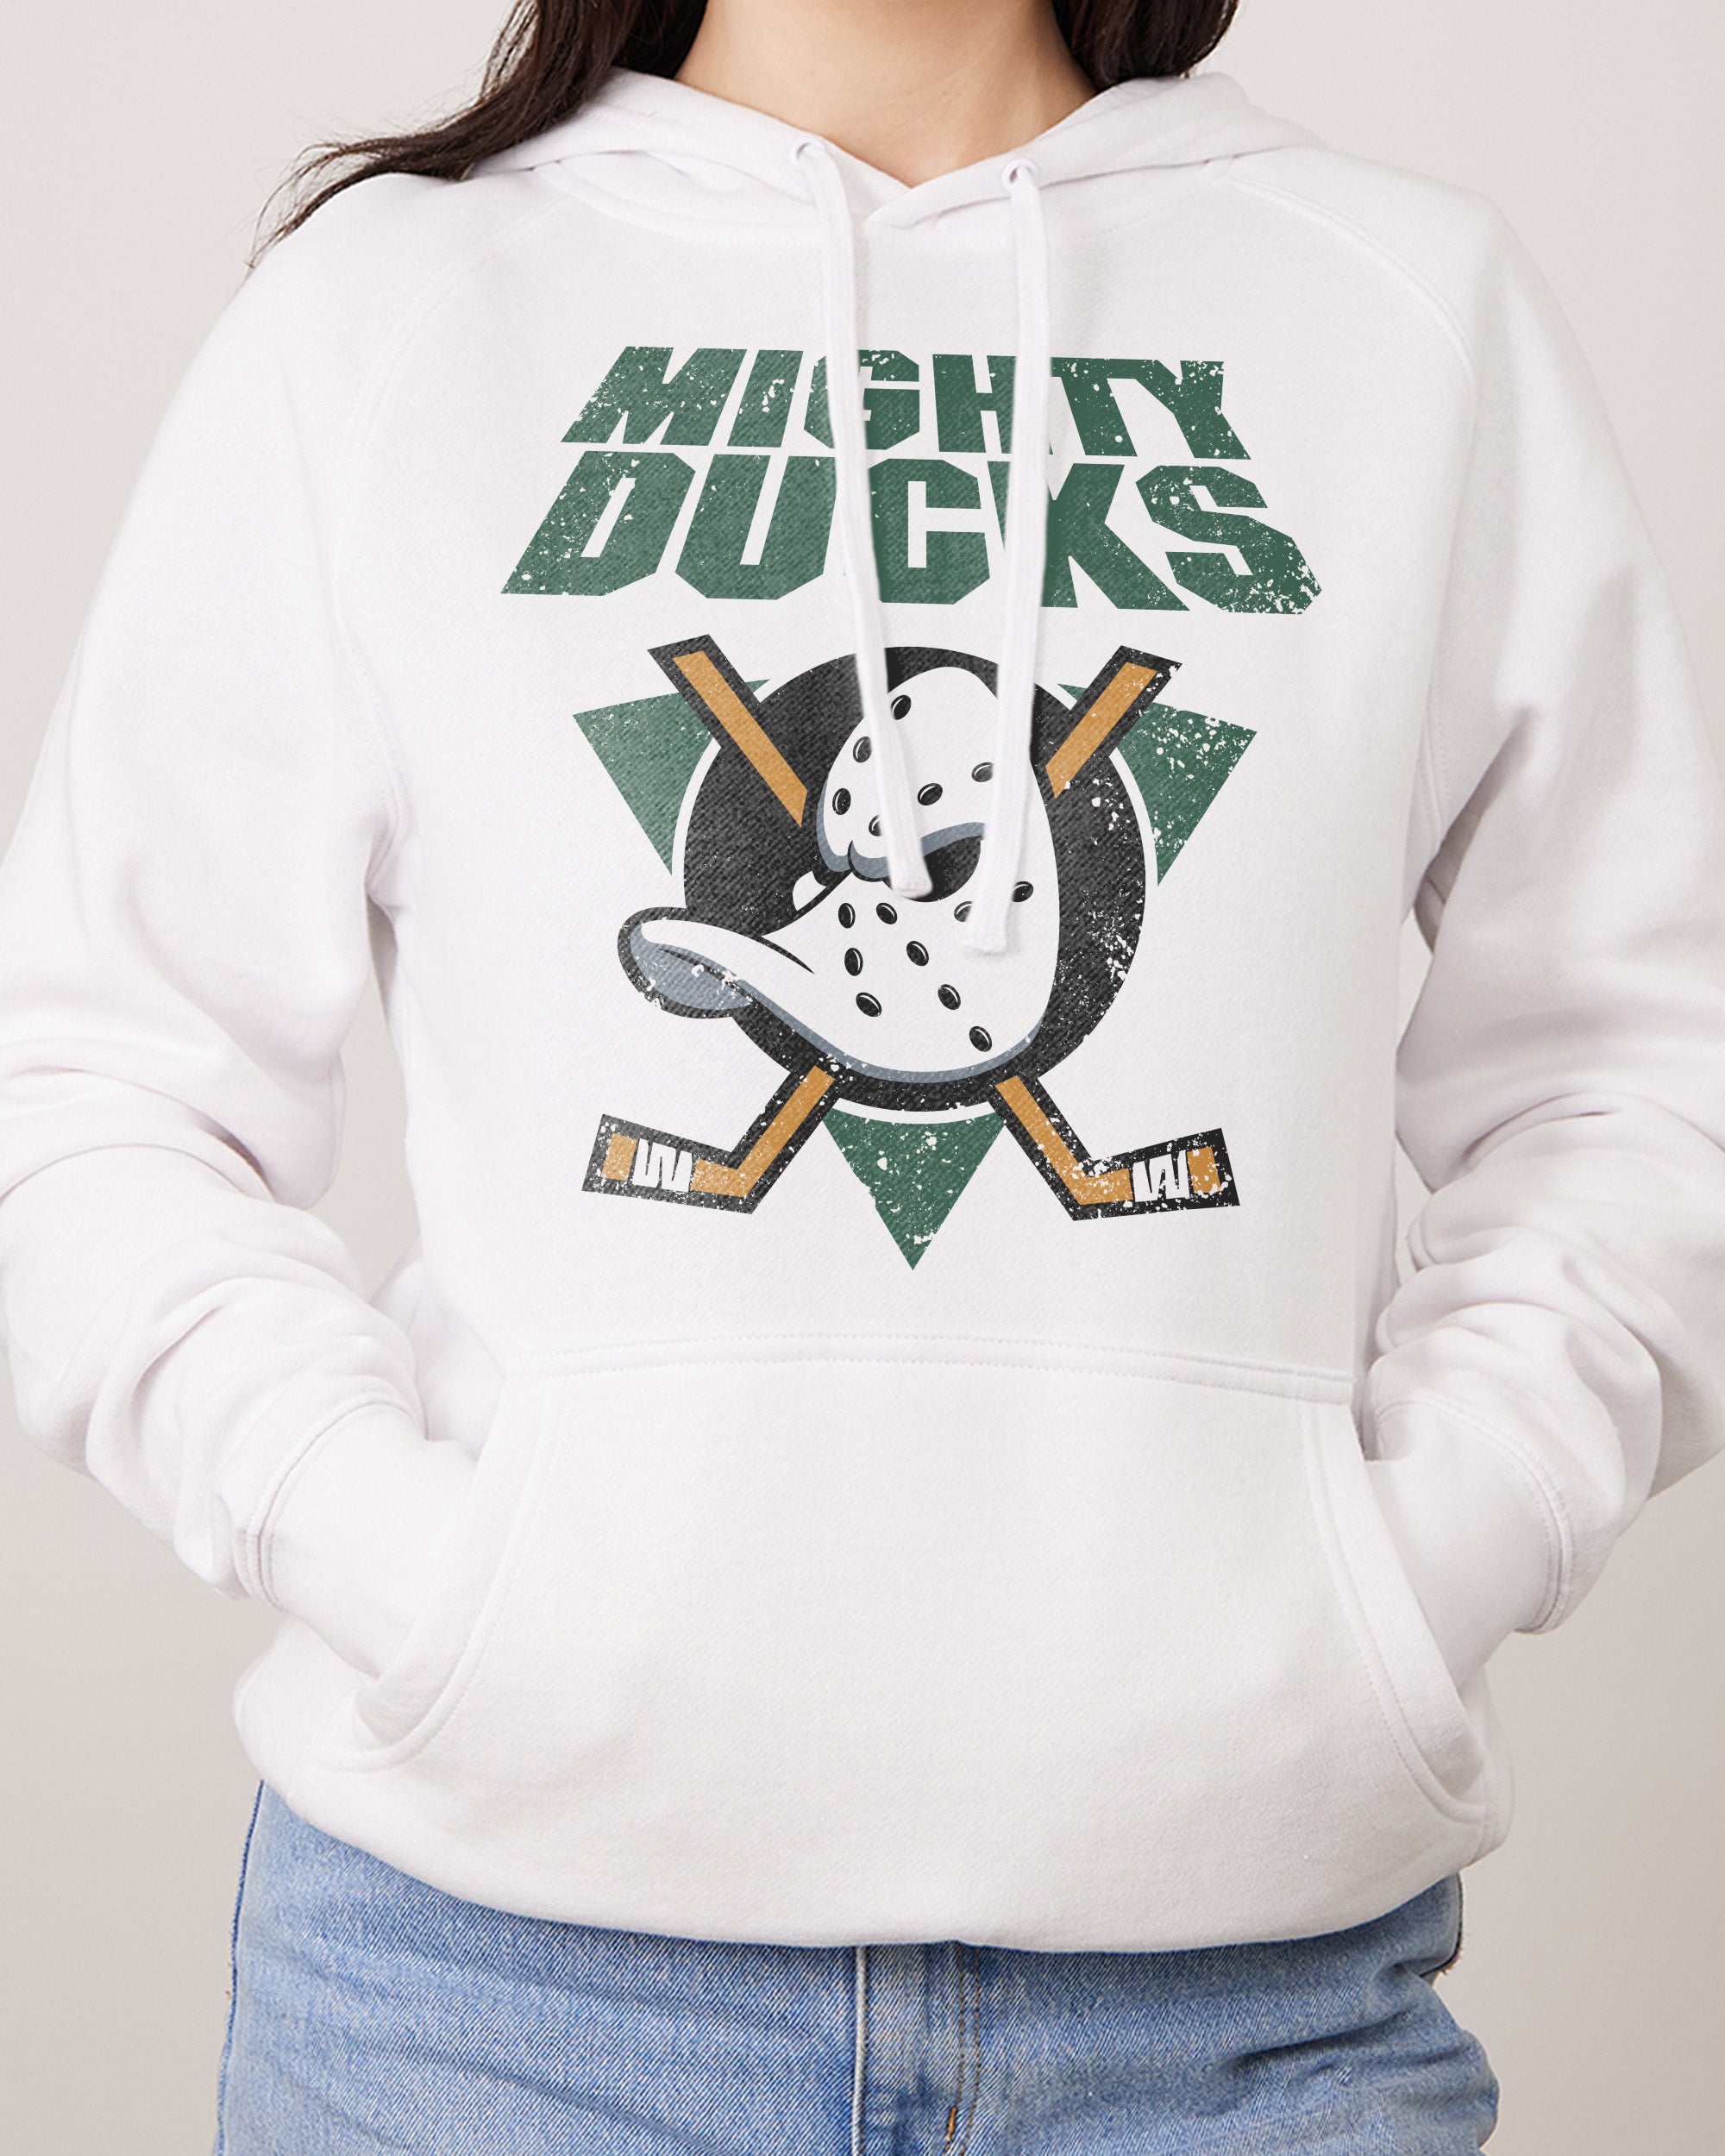 Mighty Ducks Hoodie